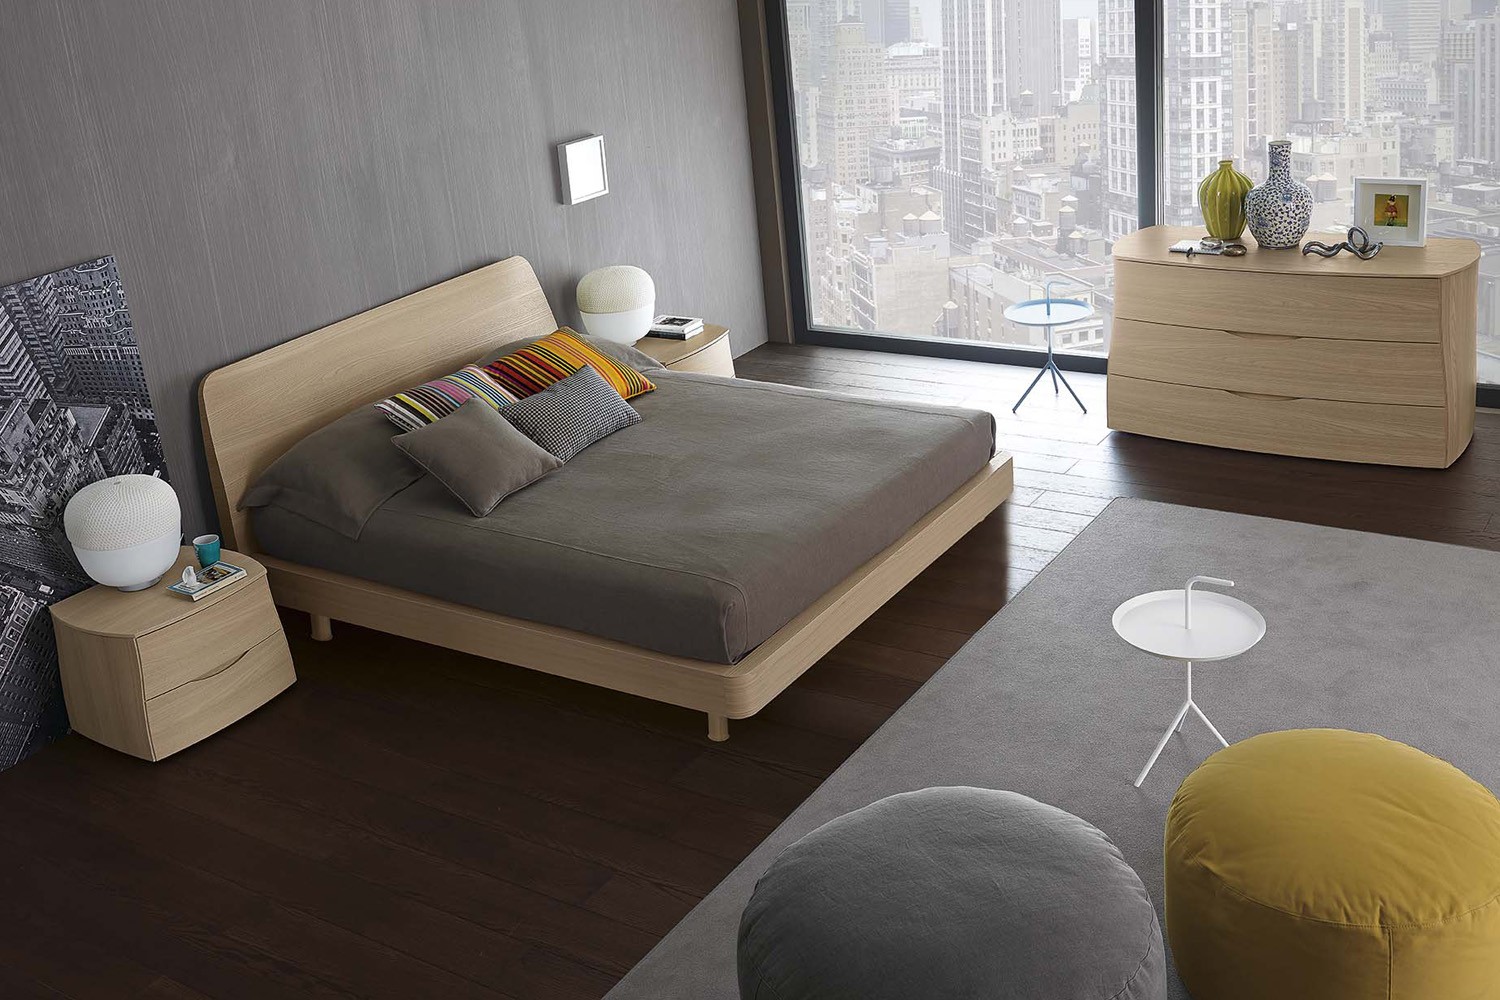 Thiết kế nội thất chung cư 2 phòng ngủ hiện đại, sang trọng